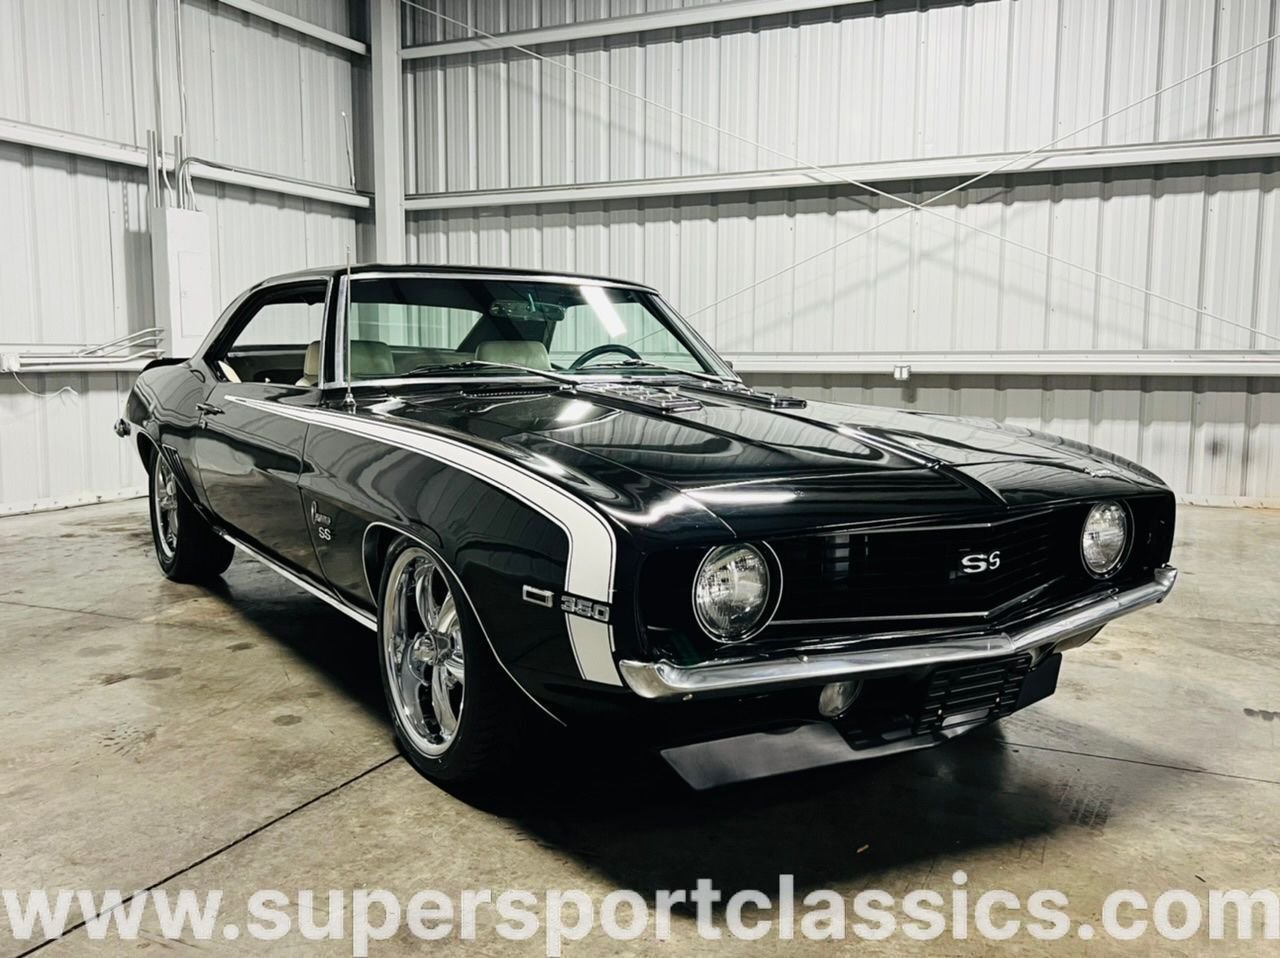 1969 Chevrolet Camaro | SuperSport Classics